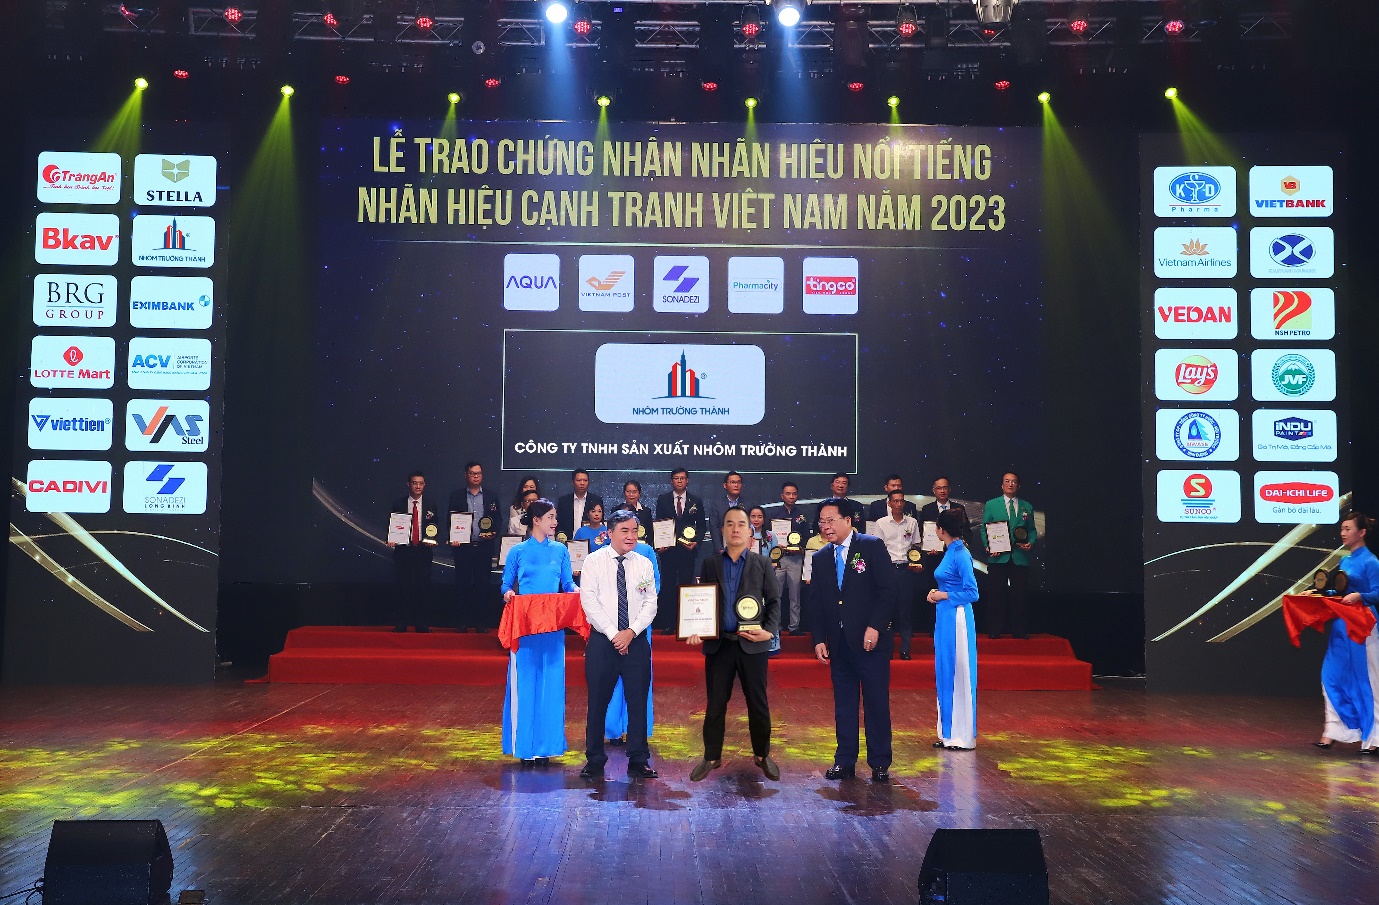 Nhôm Trường Thành - dòng nhôm “quốc dân” vinh dự lọt top 10 nhãn hiệu nổi tiếng Việt Nam ngành Xây dựng 2023 - 1